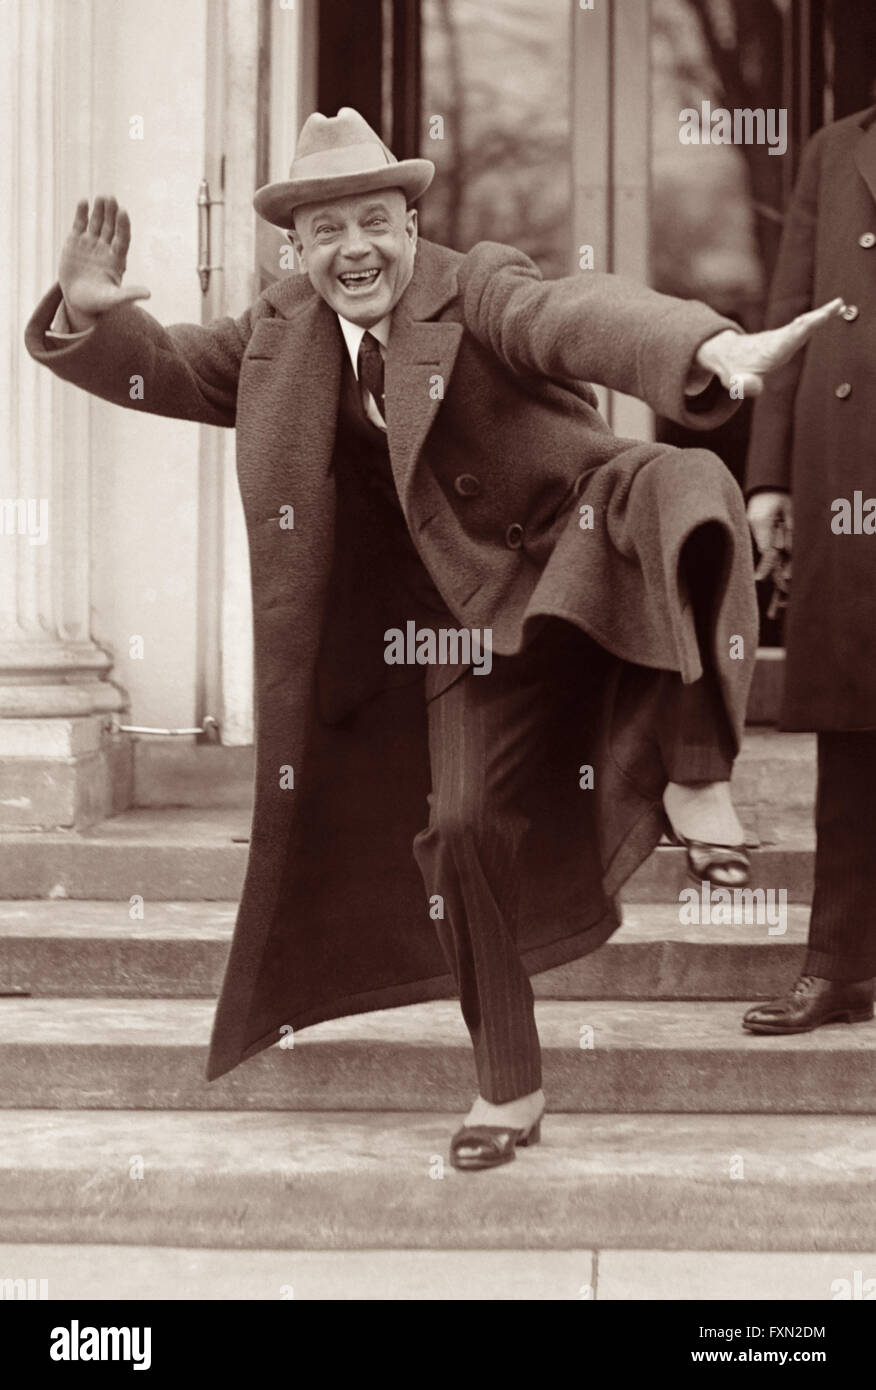 Billy Sunday, beliebte Baseball-Spieler im des späten 19. Jahrhunderts und den einflussreichsten amerikanischen Evangelisten in den ersten zwei Jahrzehnten des 20. Jahrhunderts, fällt eine "pitching" Pose auf den Stufen des weißen Hauses am 20. Februar 1922. Stockfoto